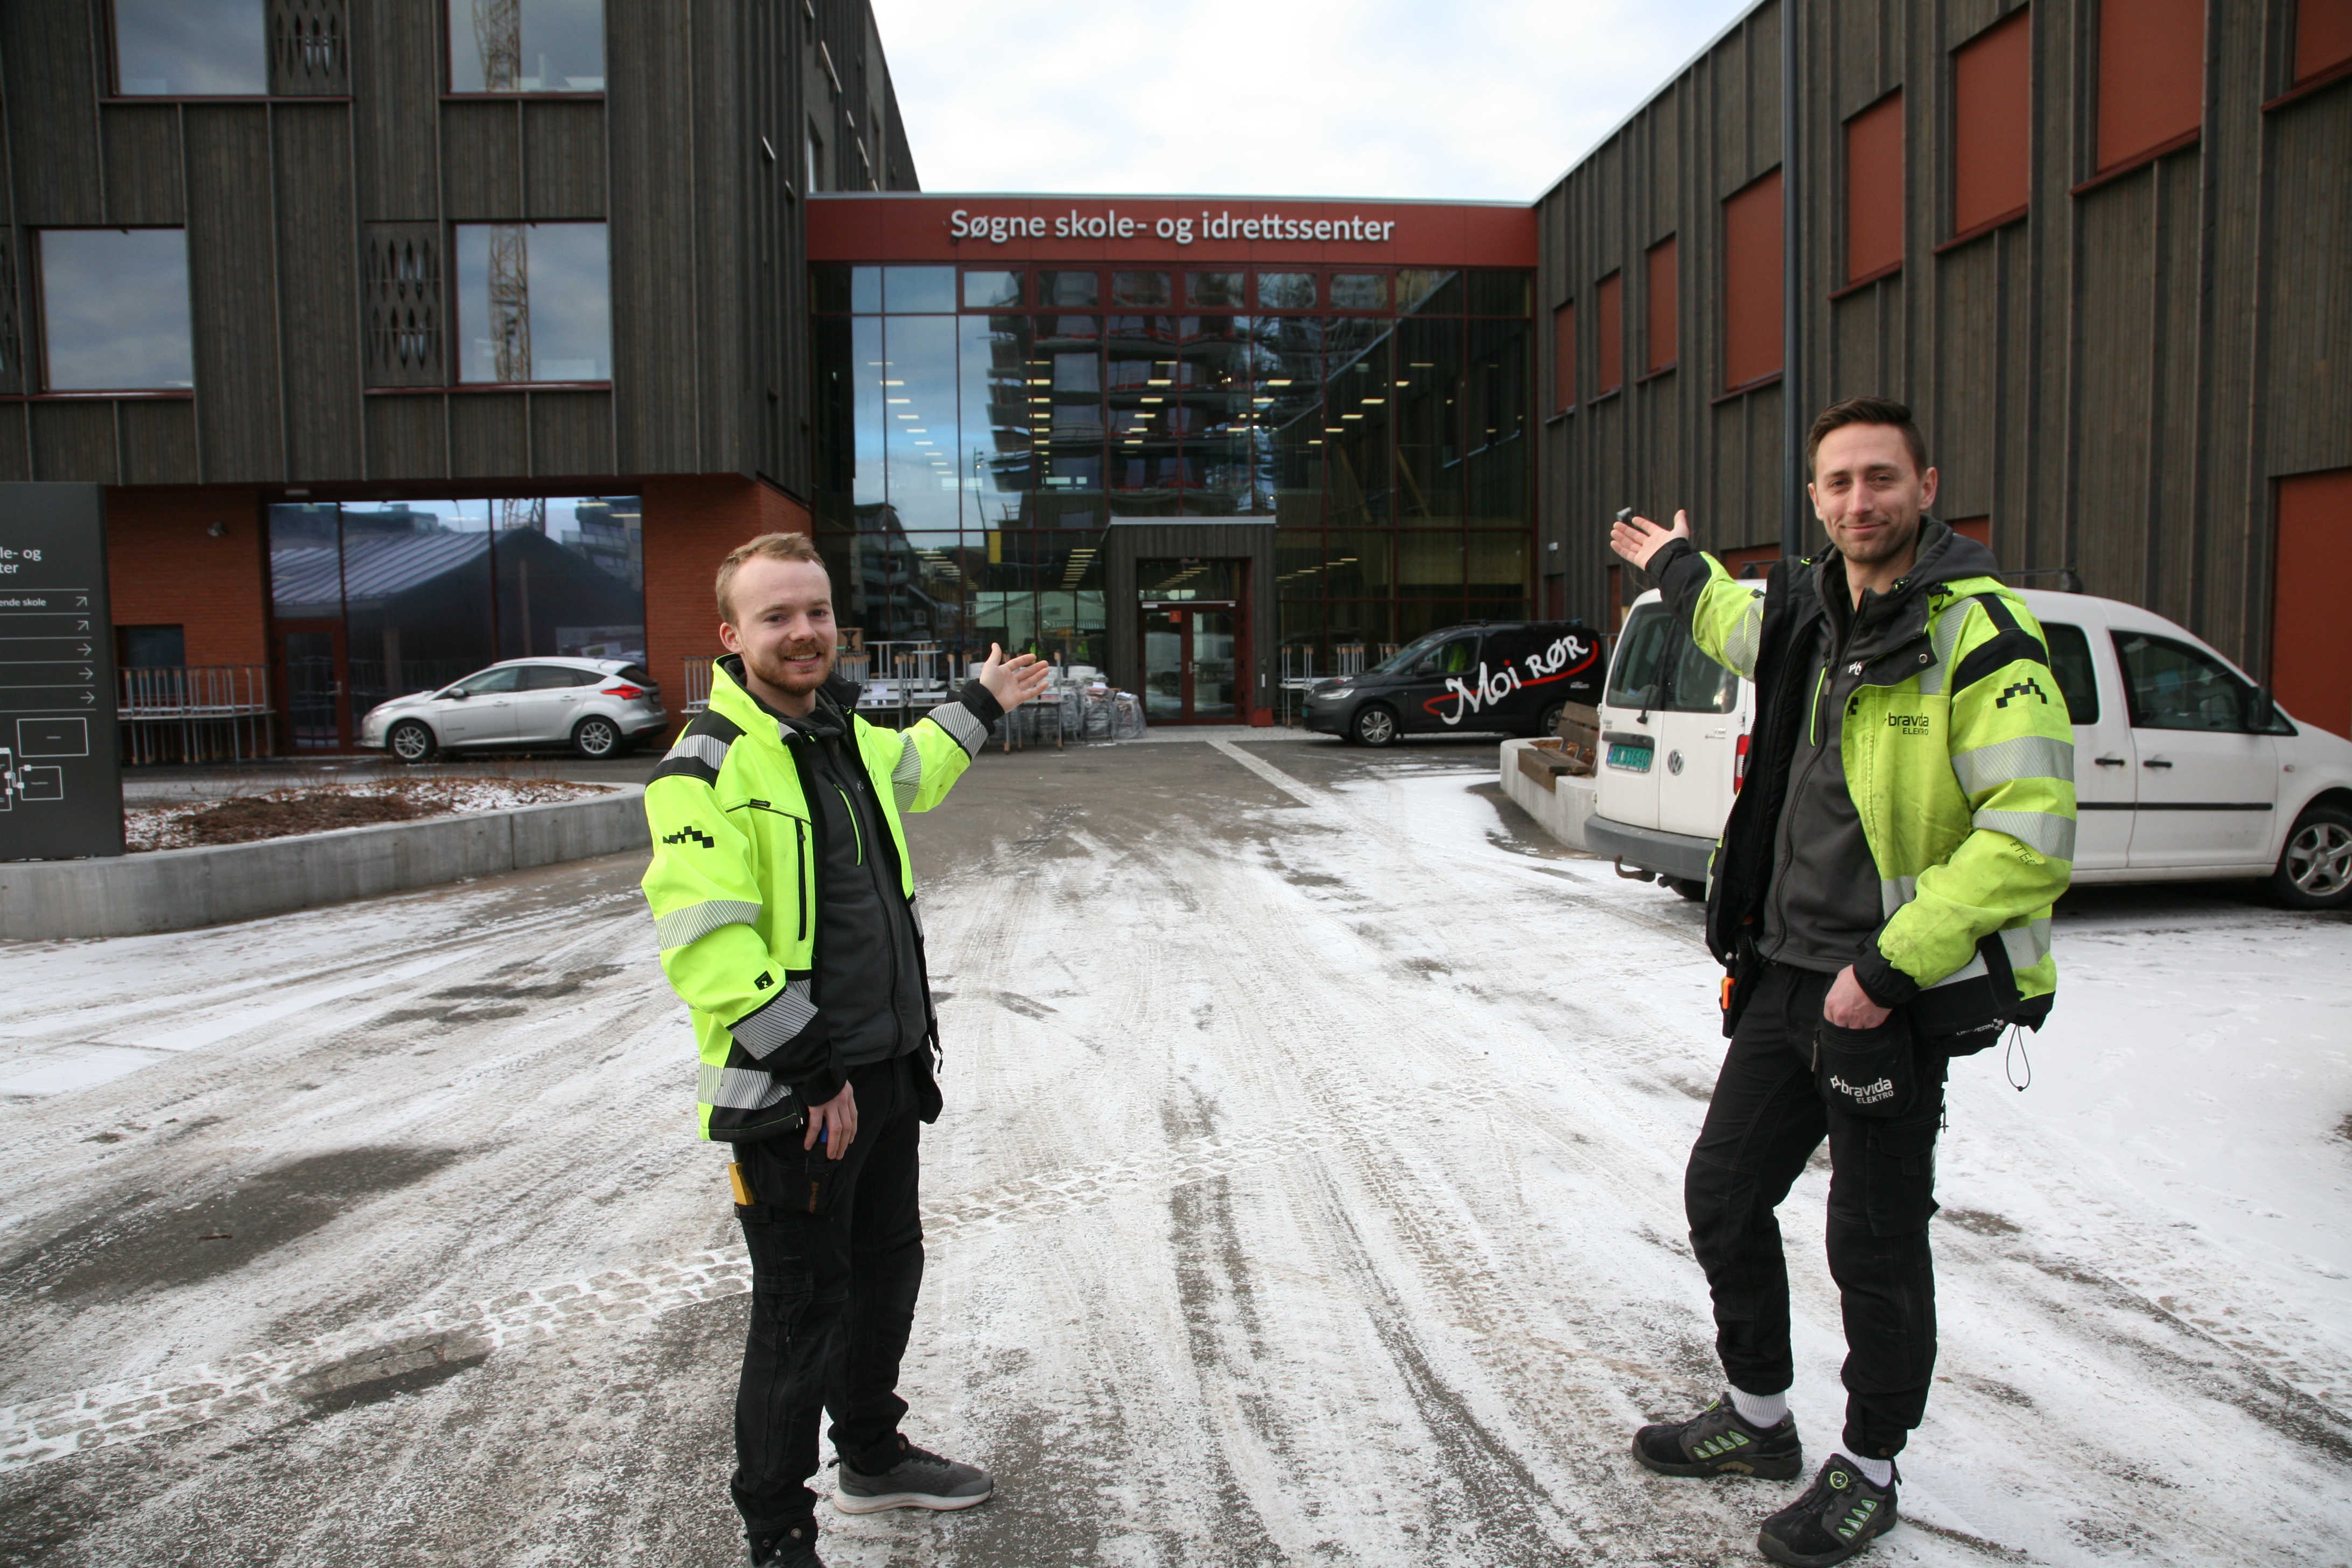 Basene Henning Hjort og Lars Borgenvik ønsker velkommen til det fantastiske nye skole- og idrettssenteret i Søgne.